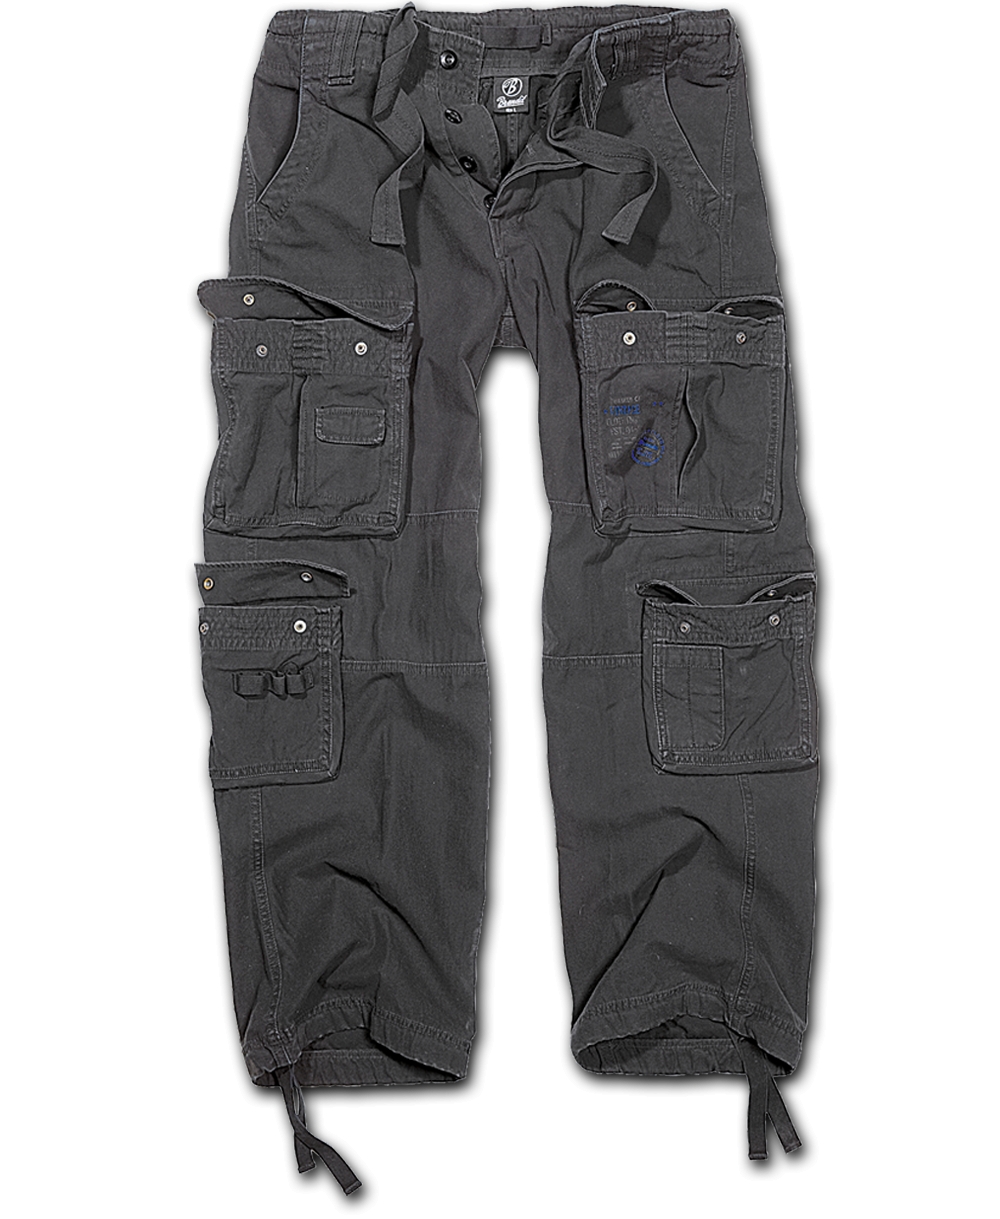 Kalhoty Brandit Pure Vintage - černé, XXL